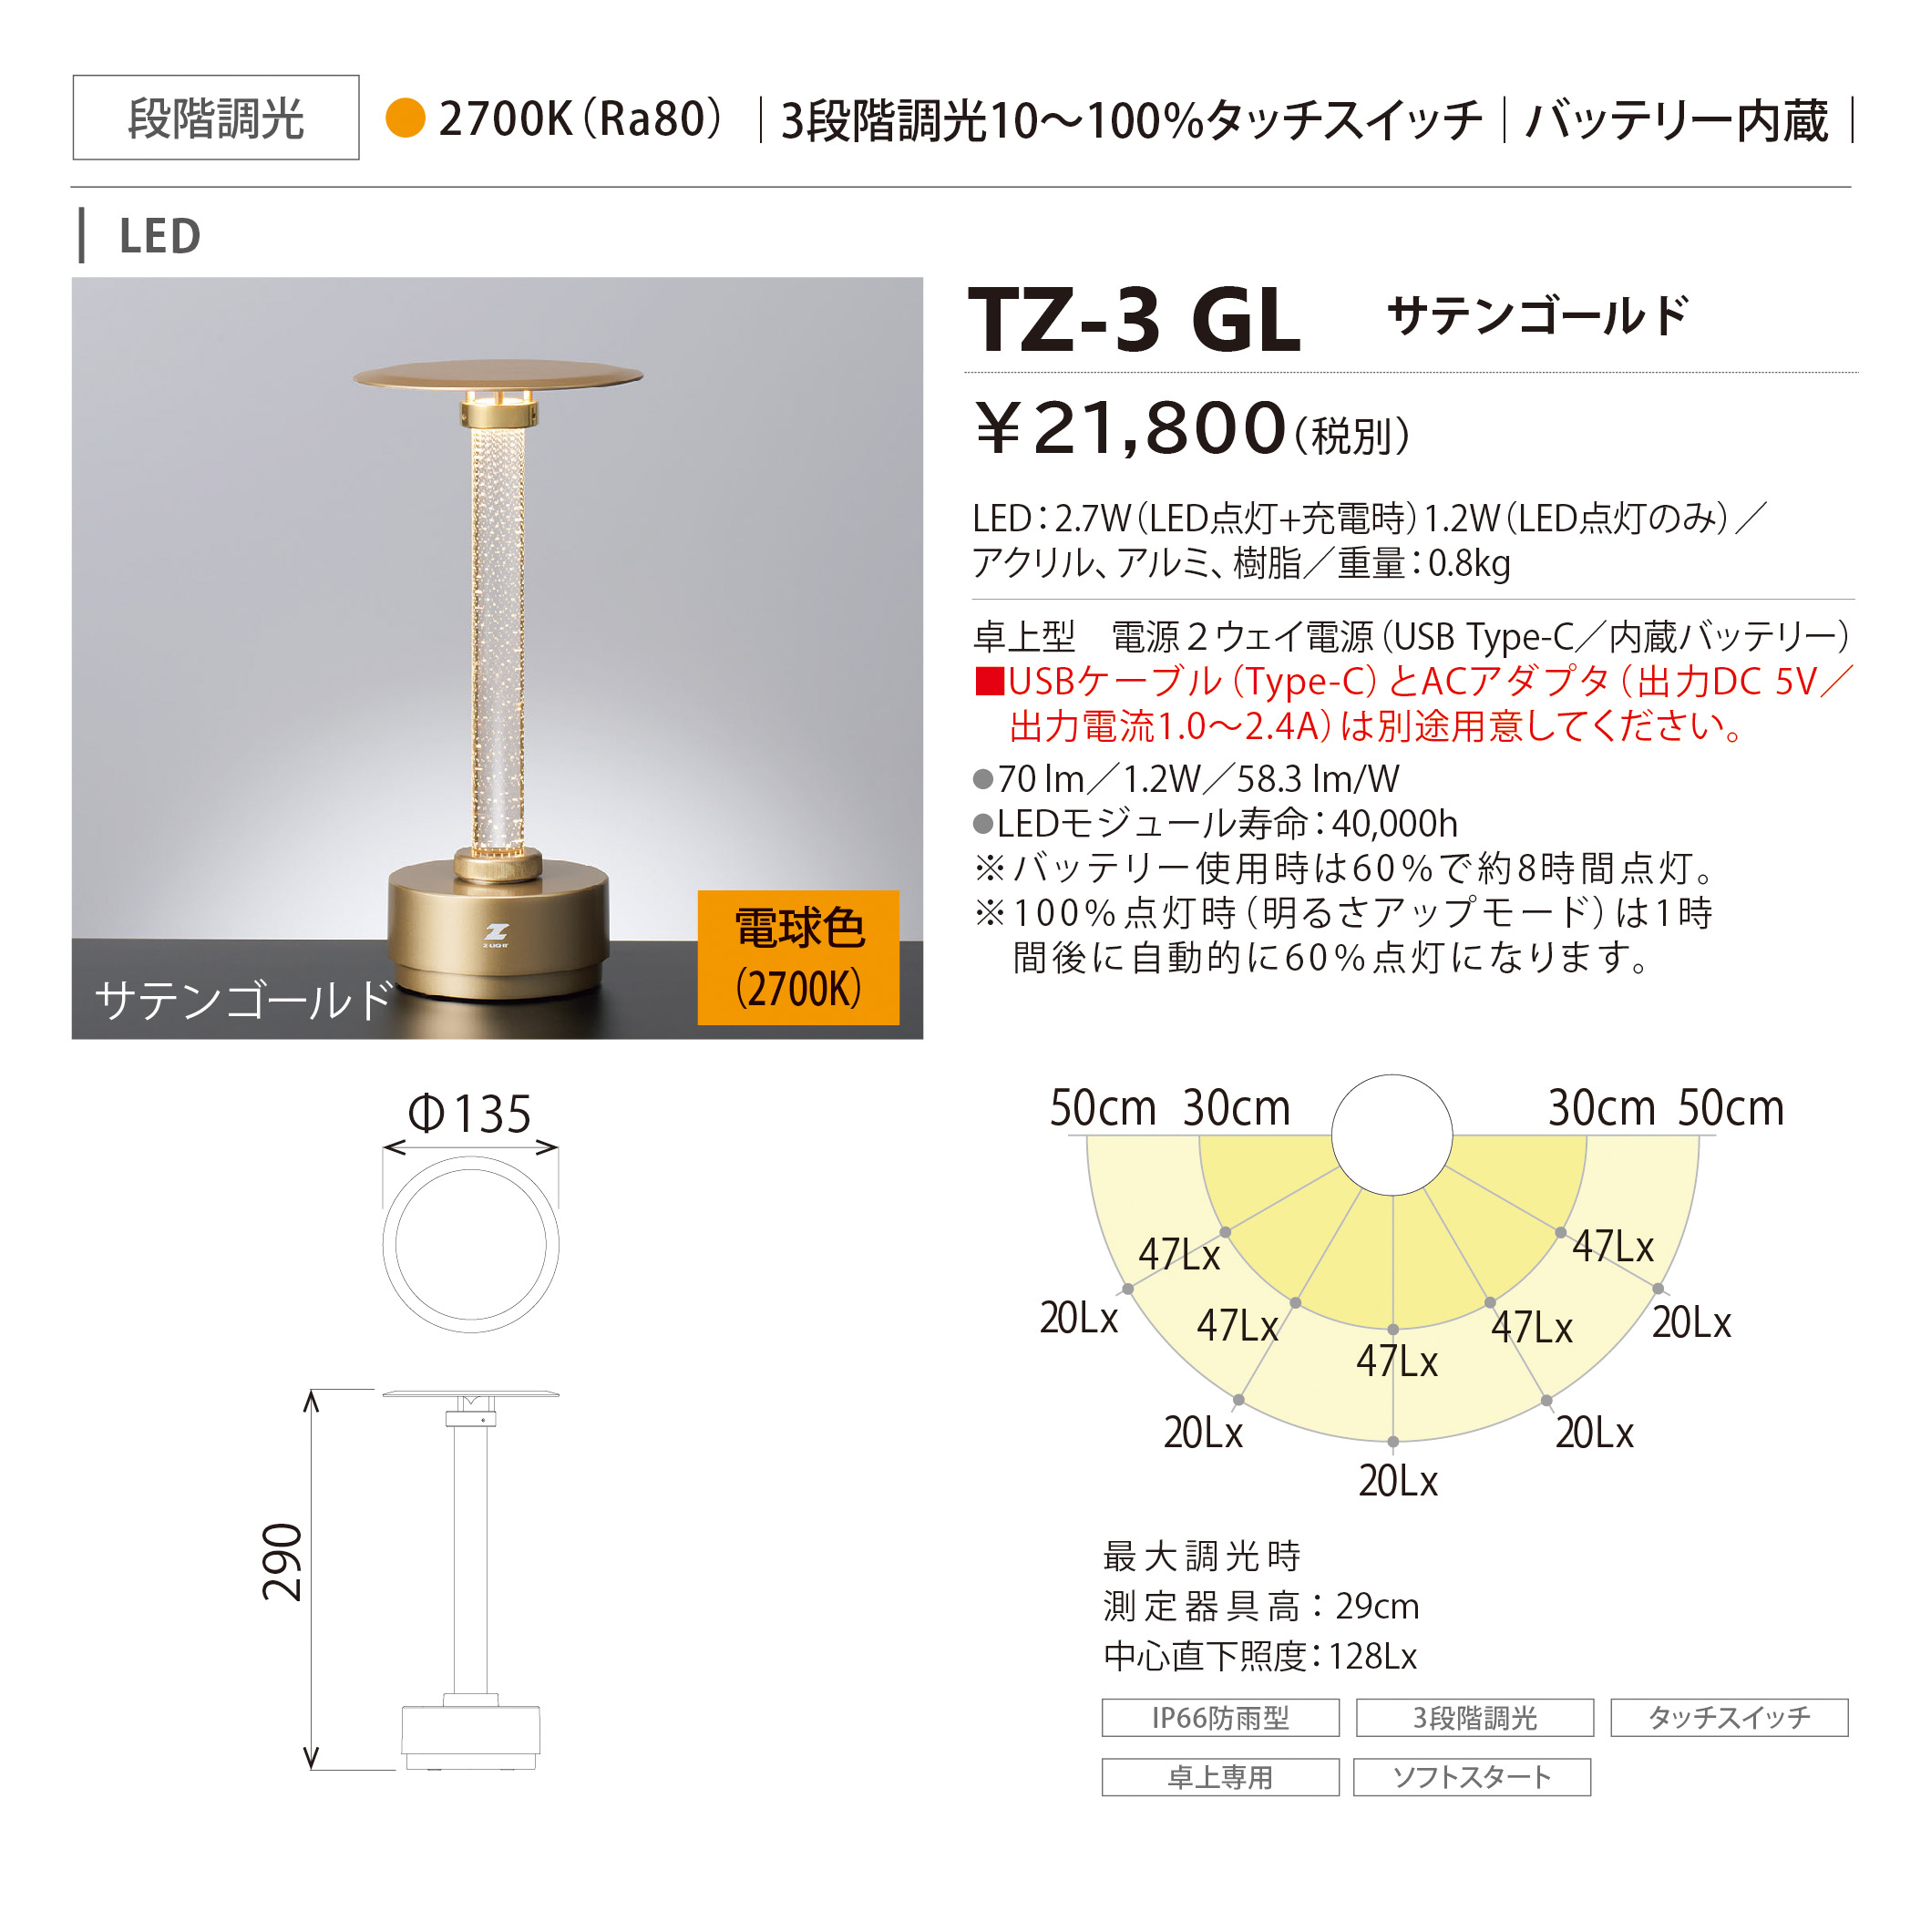 TZ-3GL